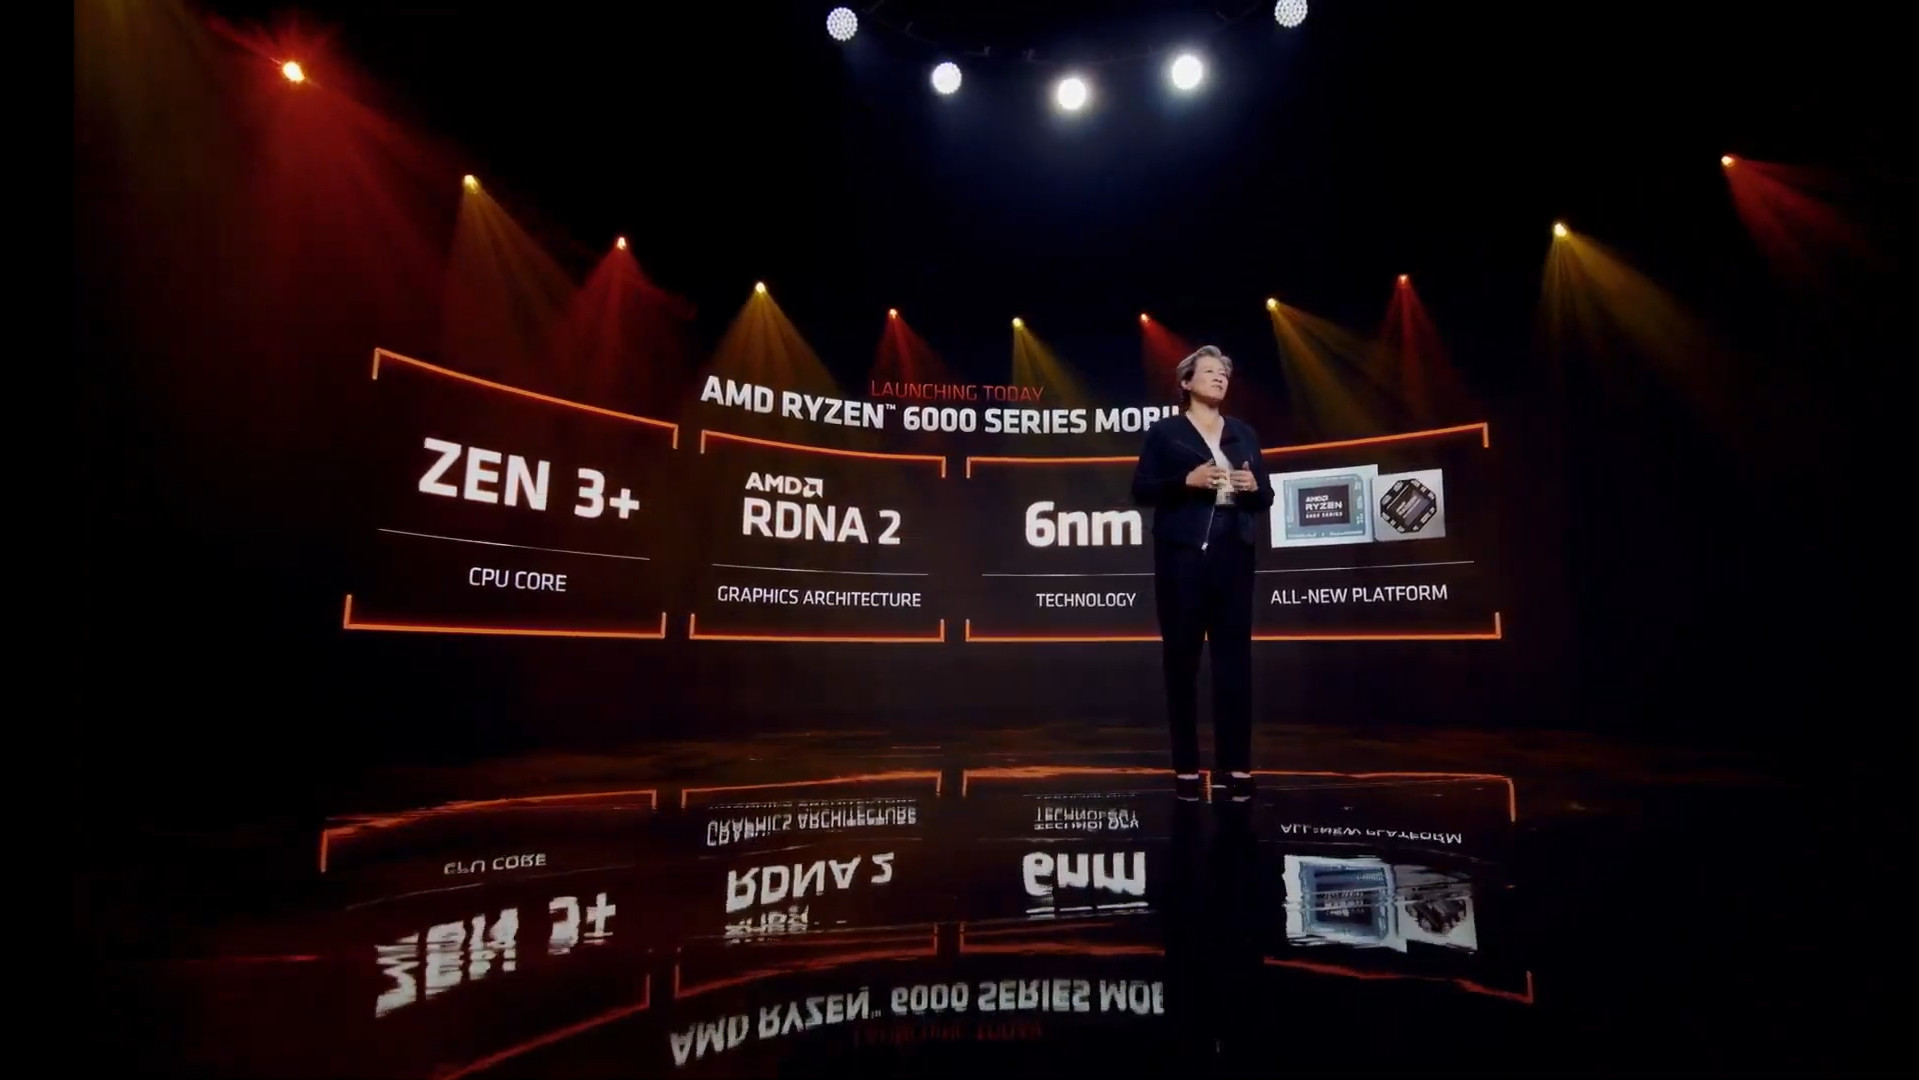 AMD Ryzen 6000 series stage